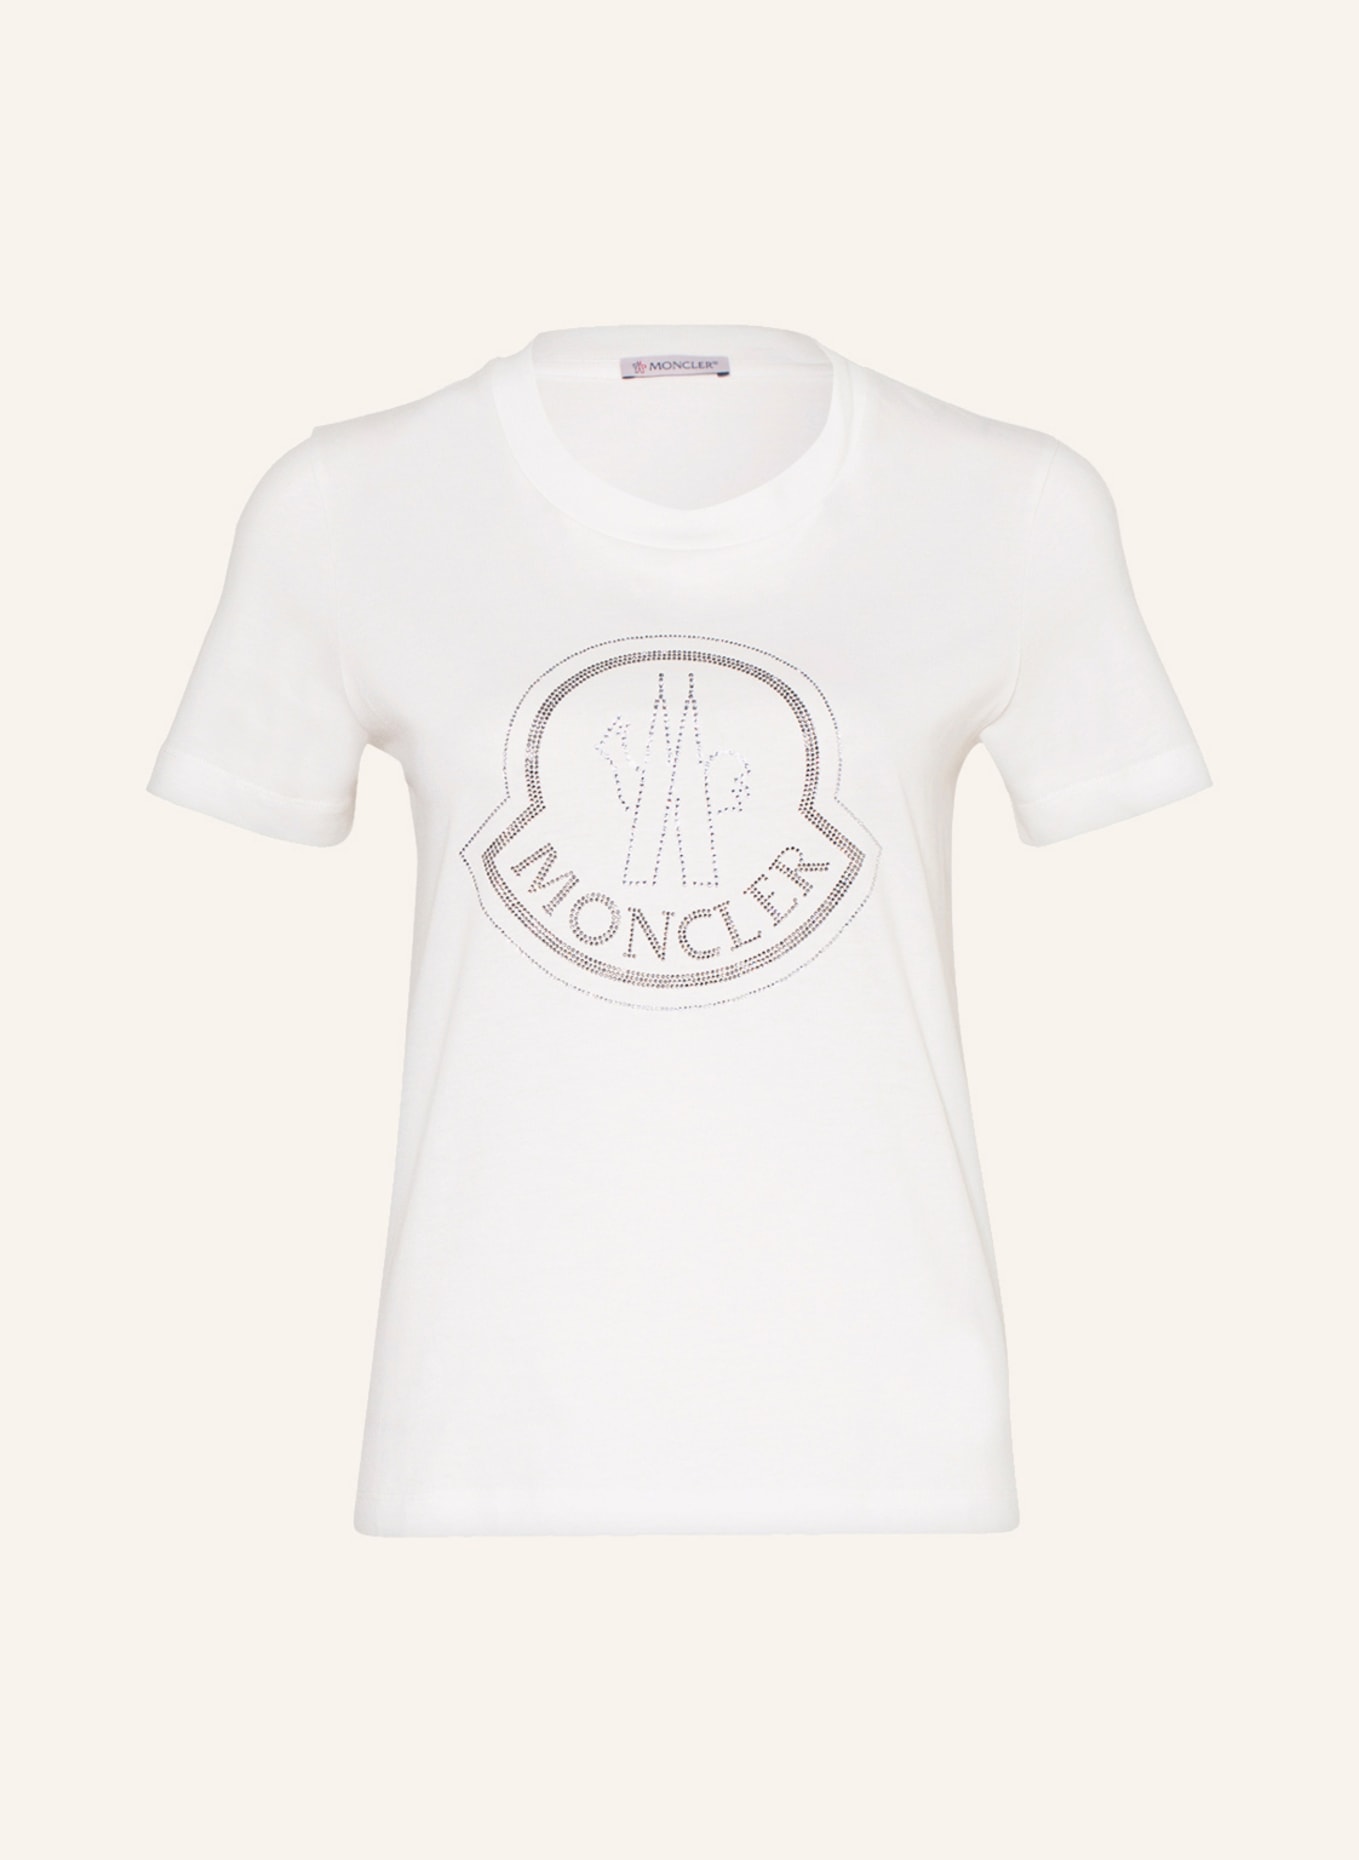 MONCLER T-Shirt mit Schmucksteinen, Farbe: WEISS (Bild 1)